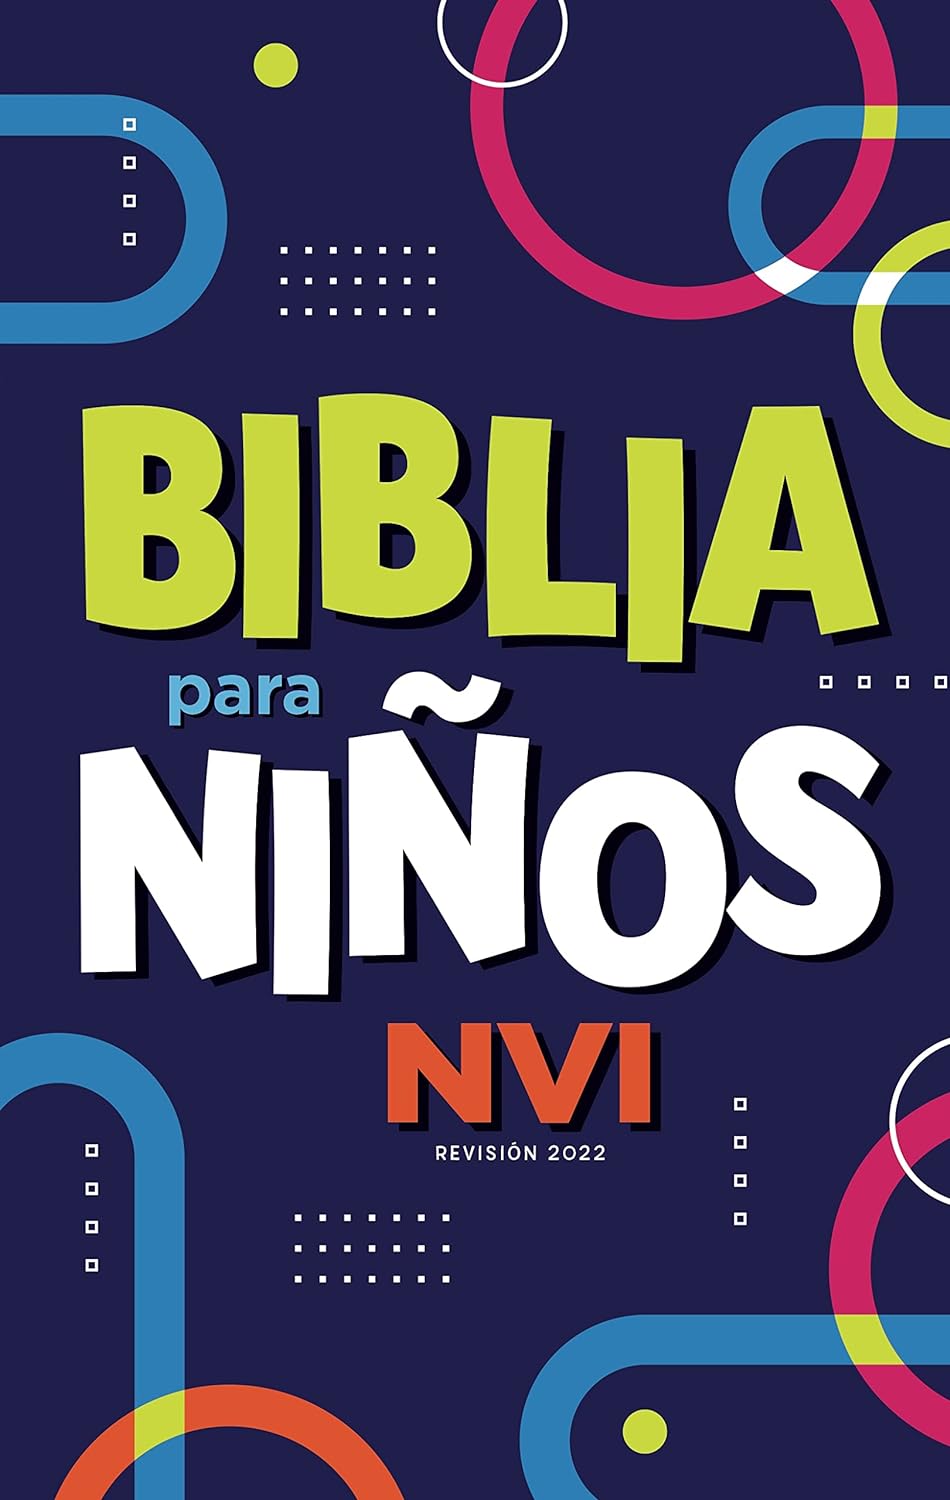 Biblia NVI 2022 para niños texto revisado